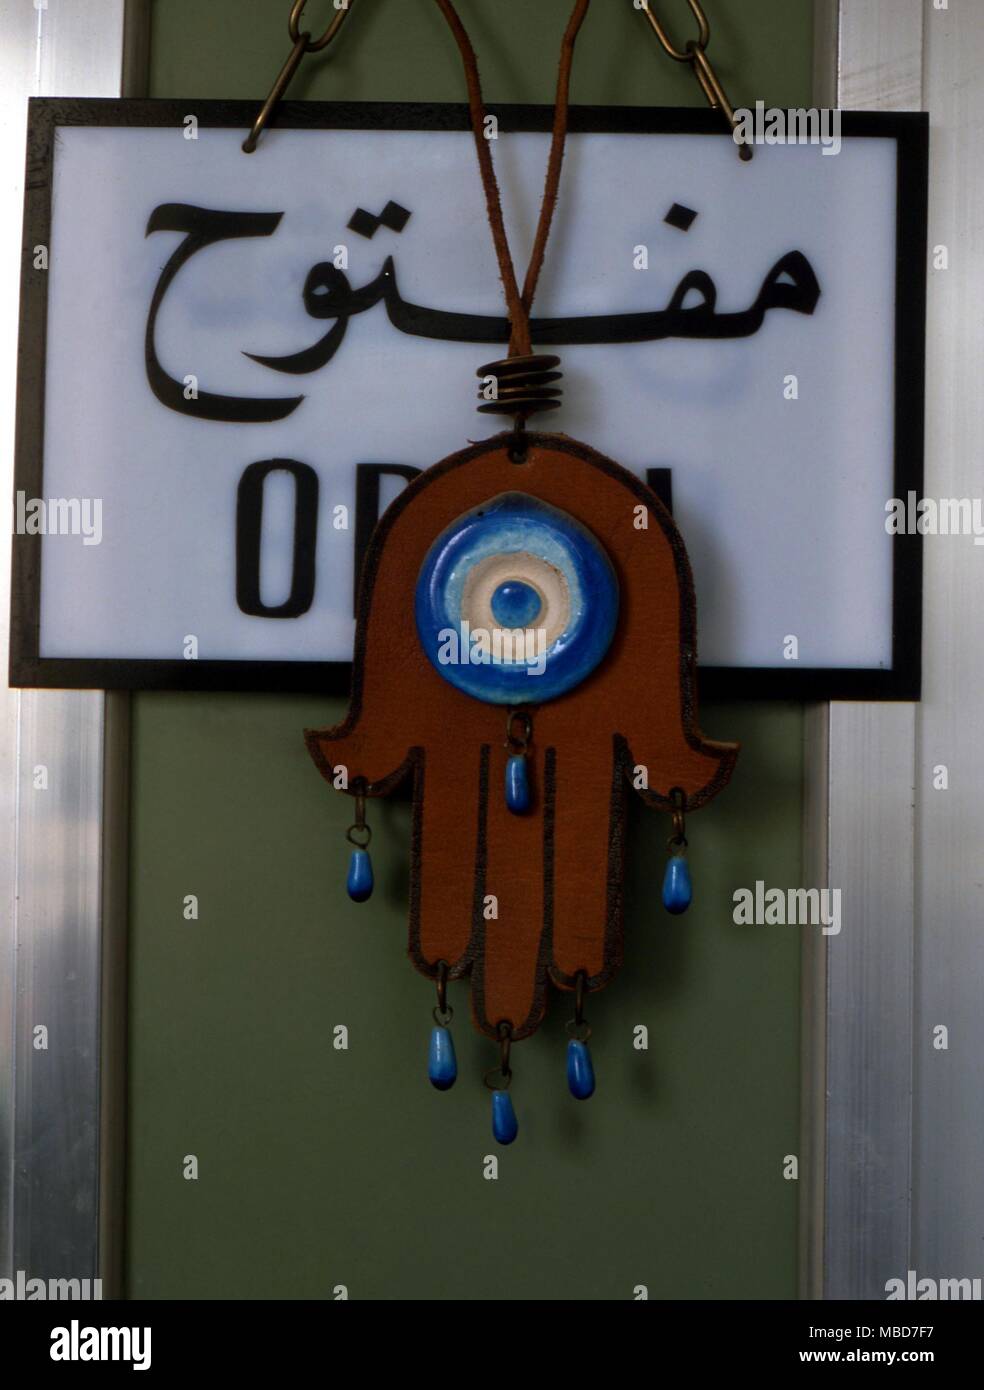 Arabisch Schutzamulett in Form einer Hand der Fatima, mit einem zentralen Auge Motiv, auf einer Tür in Kuwait. Stockfoto